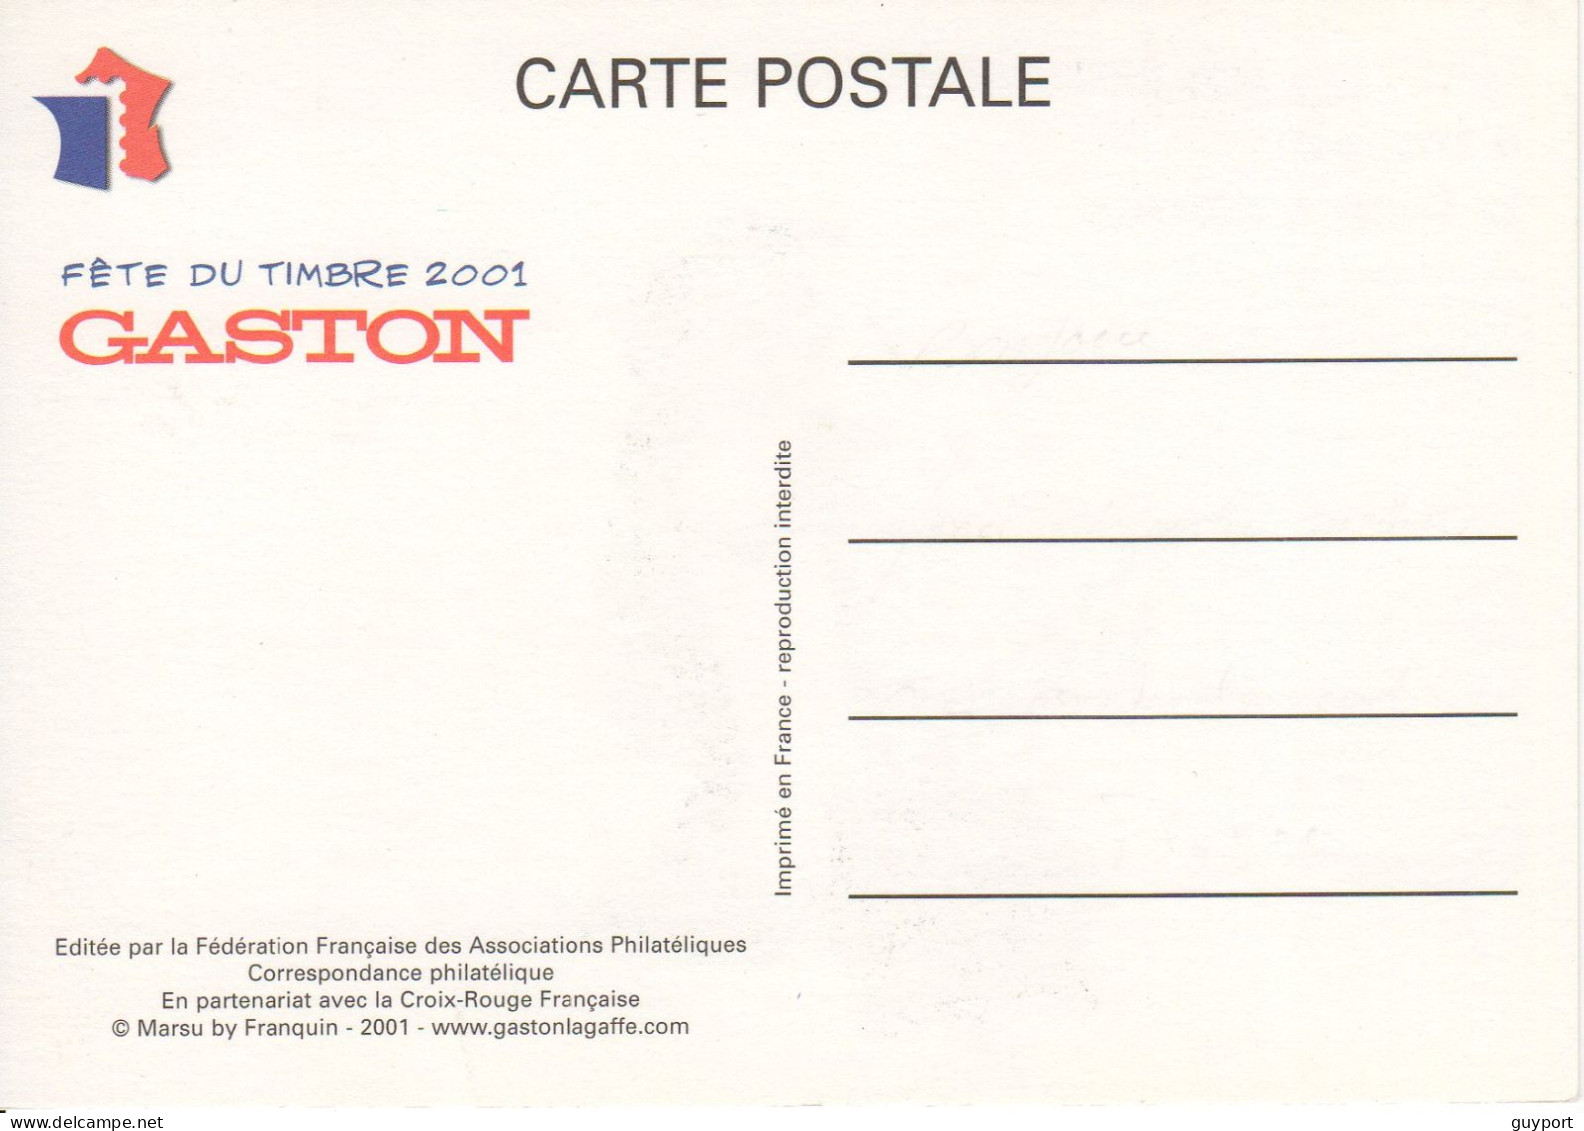 Gaston Lagaffe A Inventé Le Frein à Disque. Fête Du Timbre 2001 - Bandes Dessinées